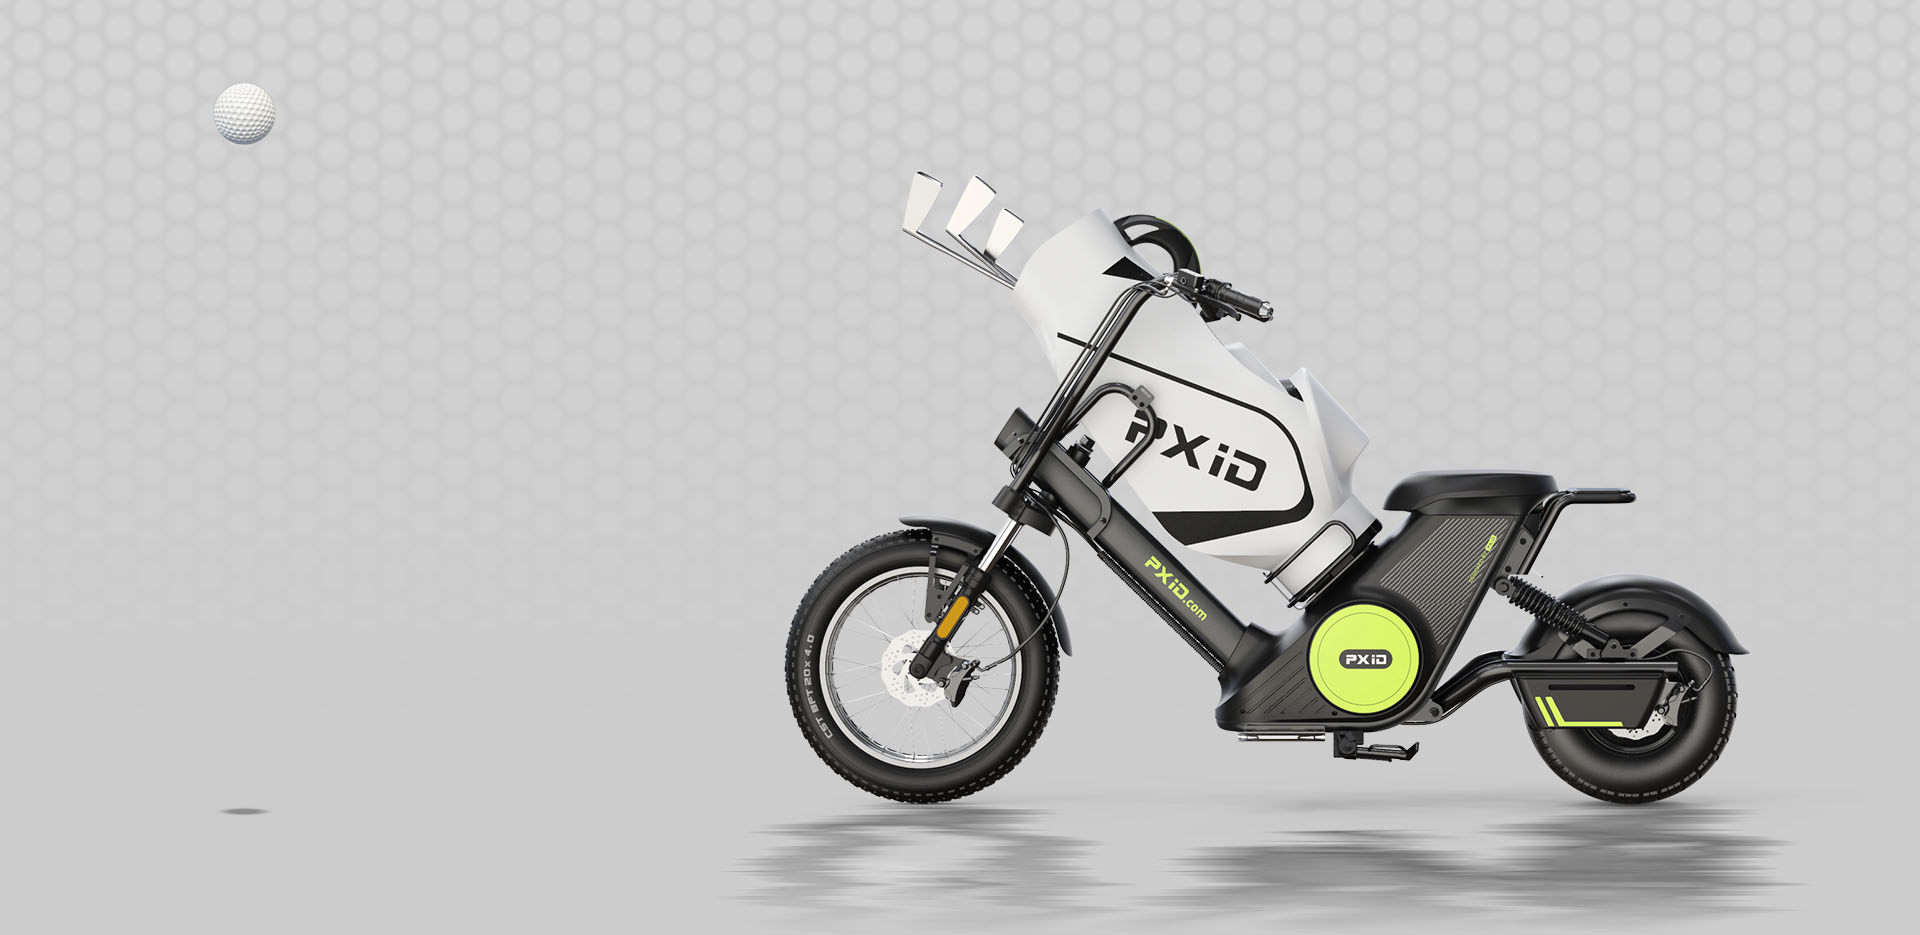 Citycoco 2000W סוללה נשלפת אופנוע חשמלי עם תיק גולף תמונה מוצגת